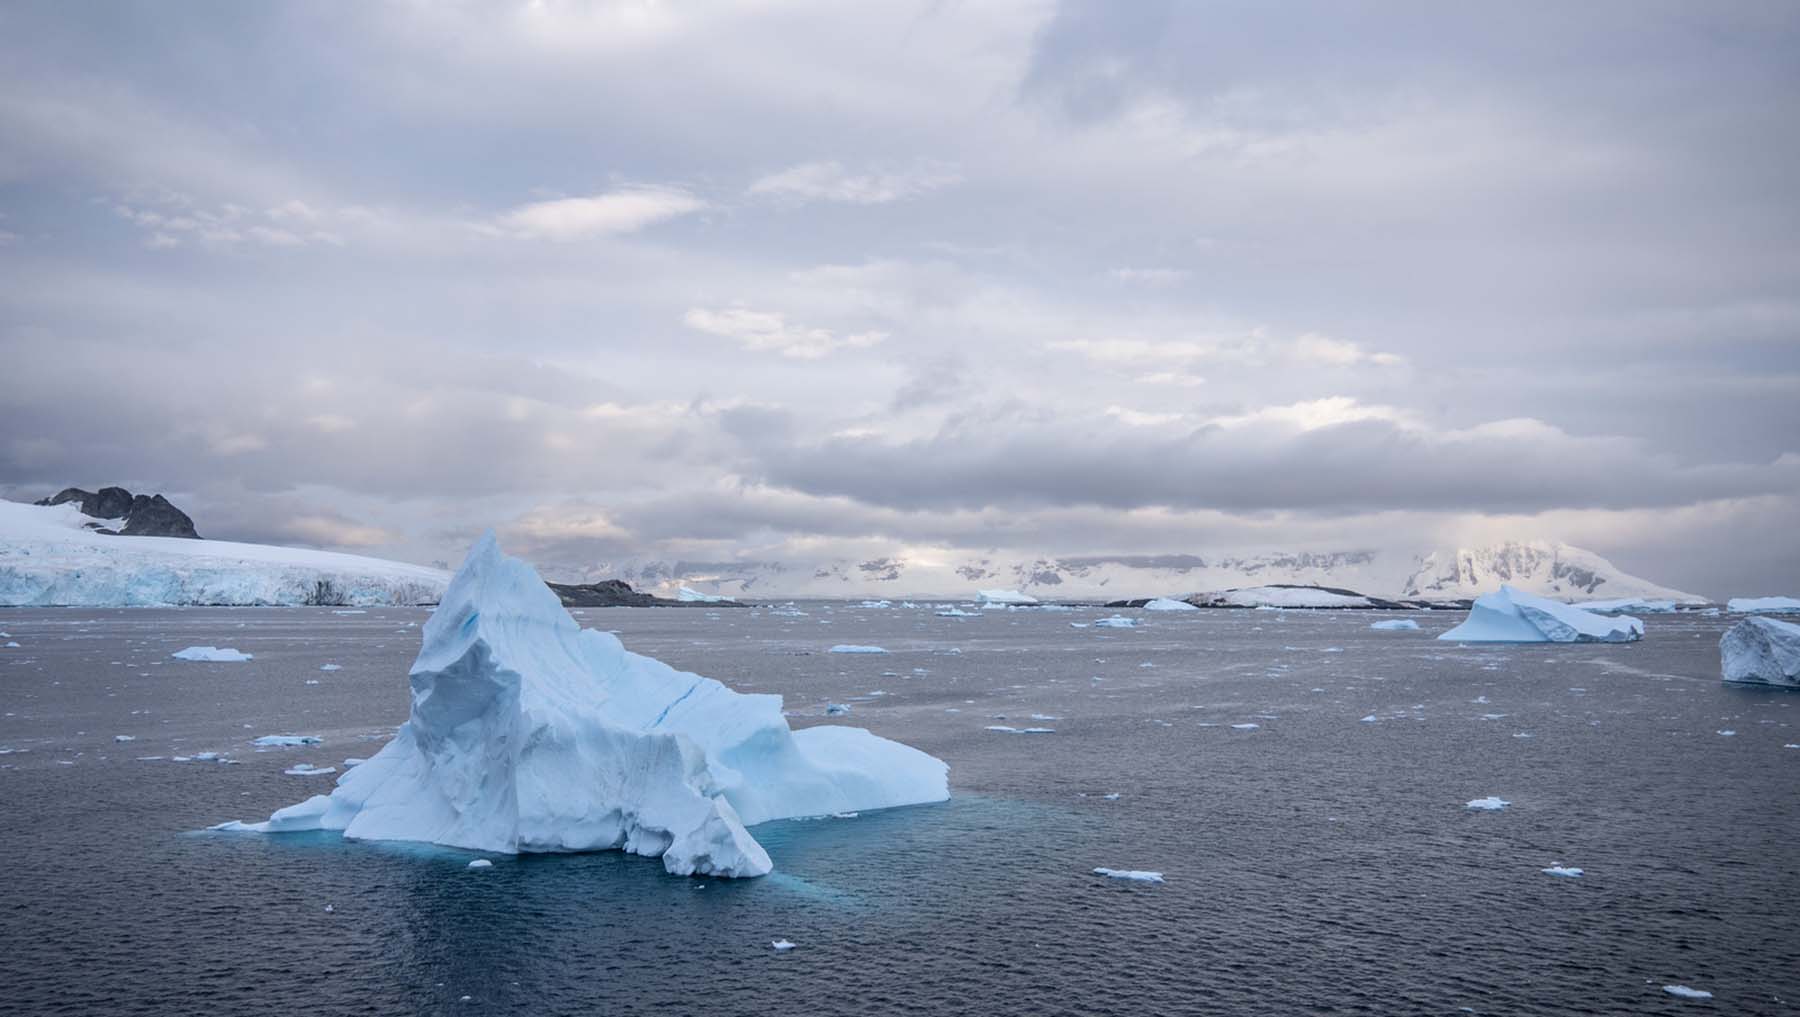  Antarctica | Landscapes of Antarctica: 8 Best Natural Destinations